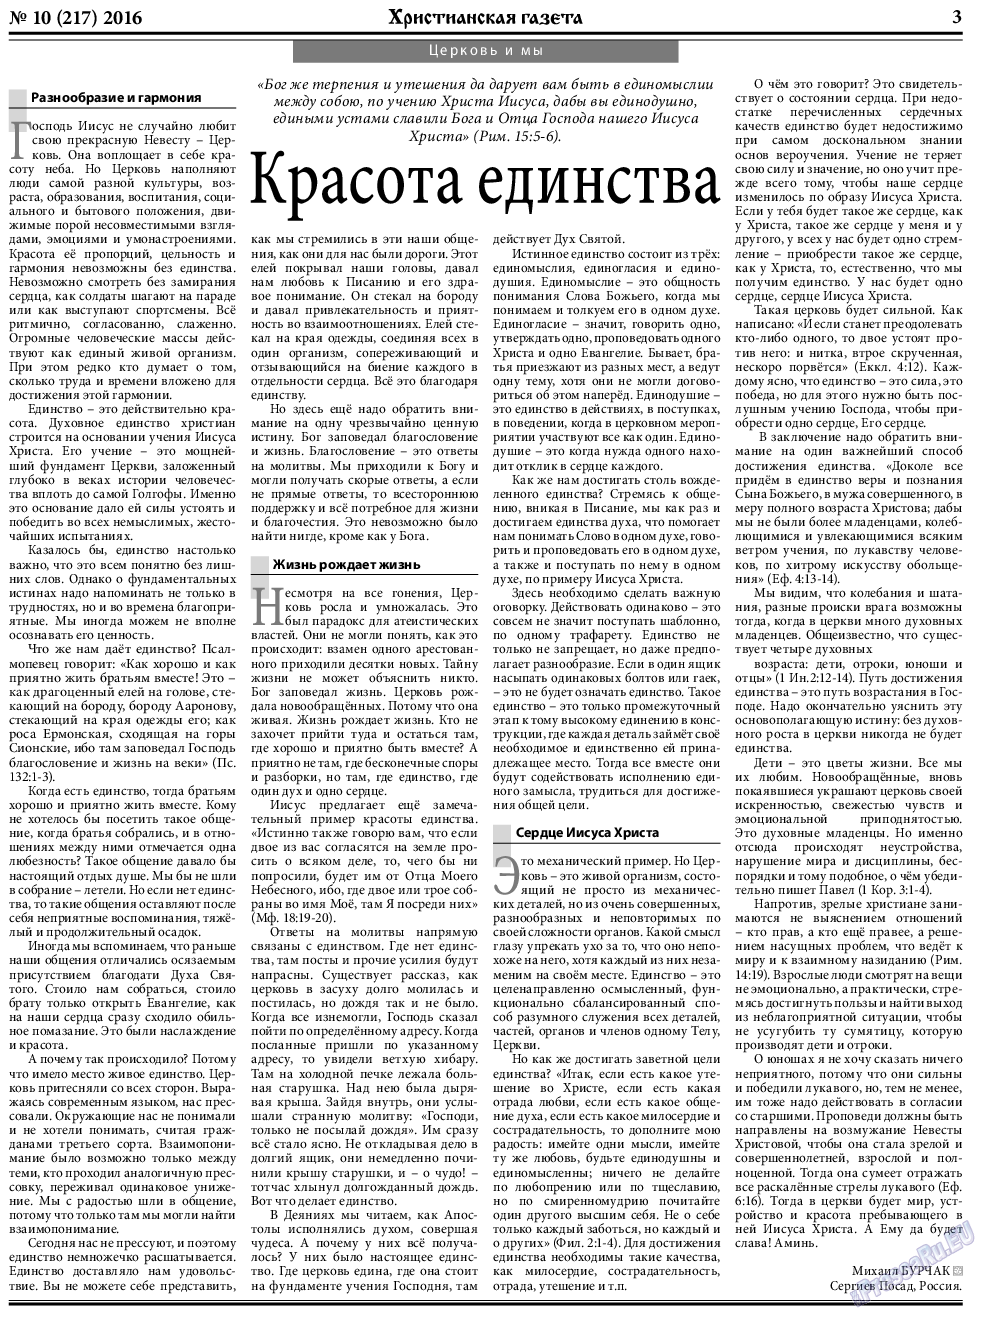 Христианская газета, газета. 2016 №10 стр.3